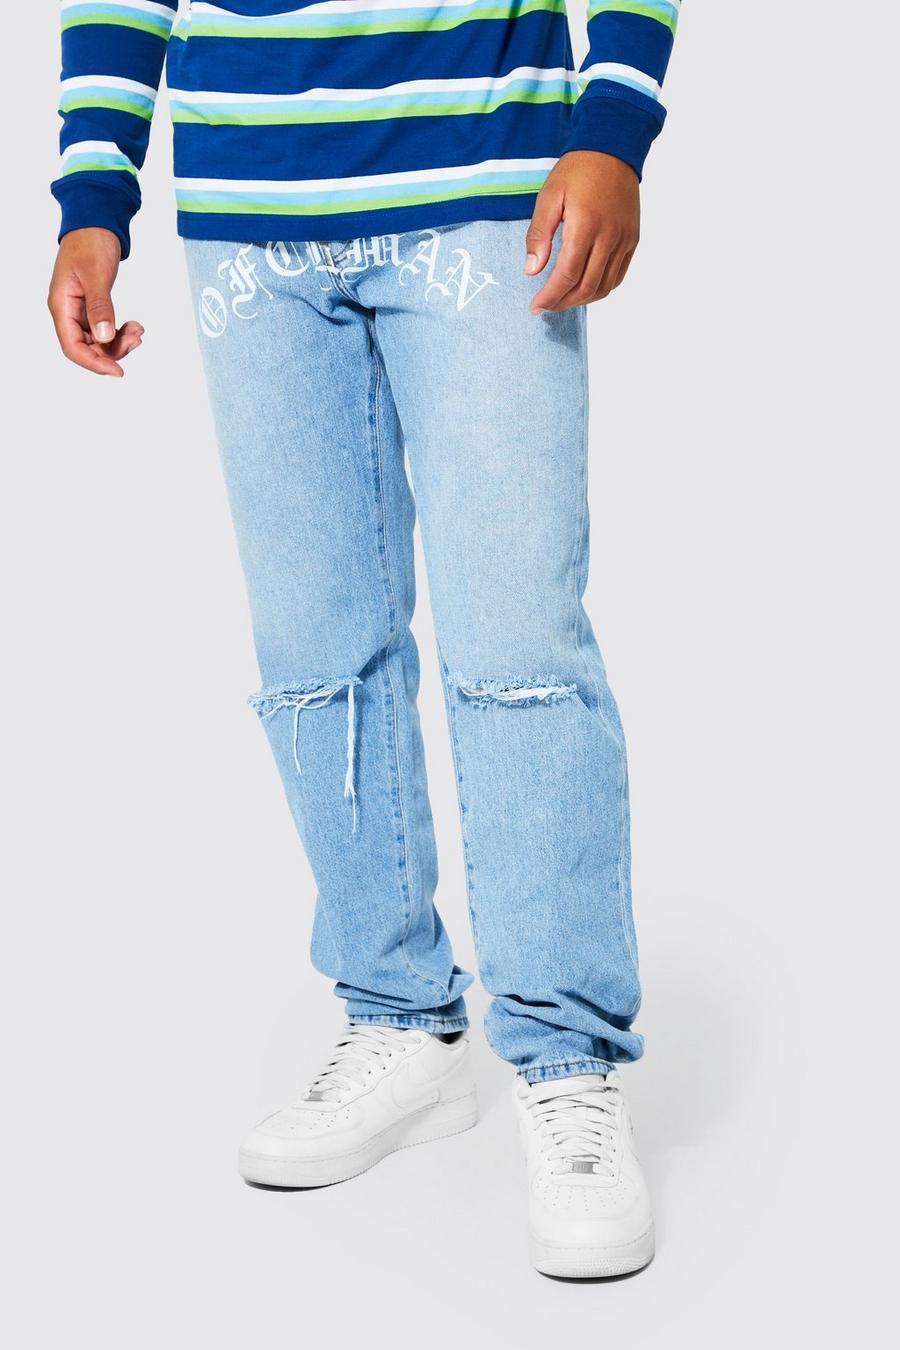 כחול בהיר azul ג'ינס קשיח בגזרת רגל ישרה עם הדפס Ofcl, לגברים גבוהים image number 1